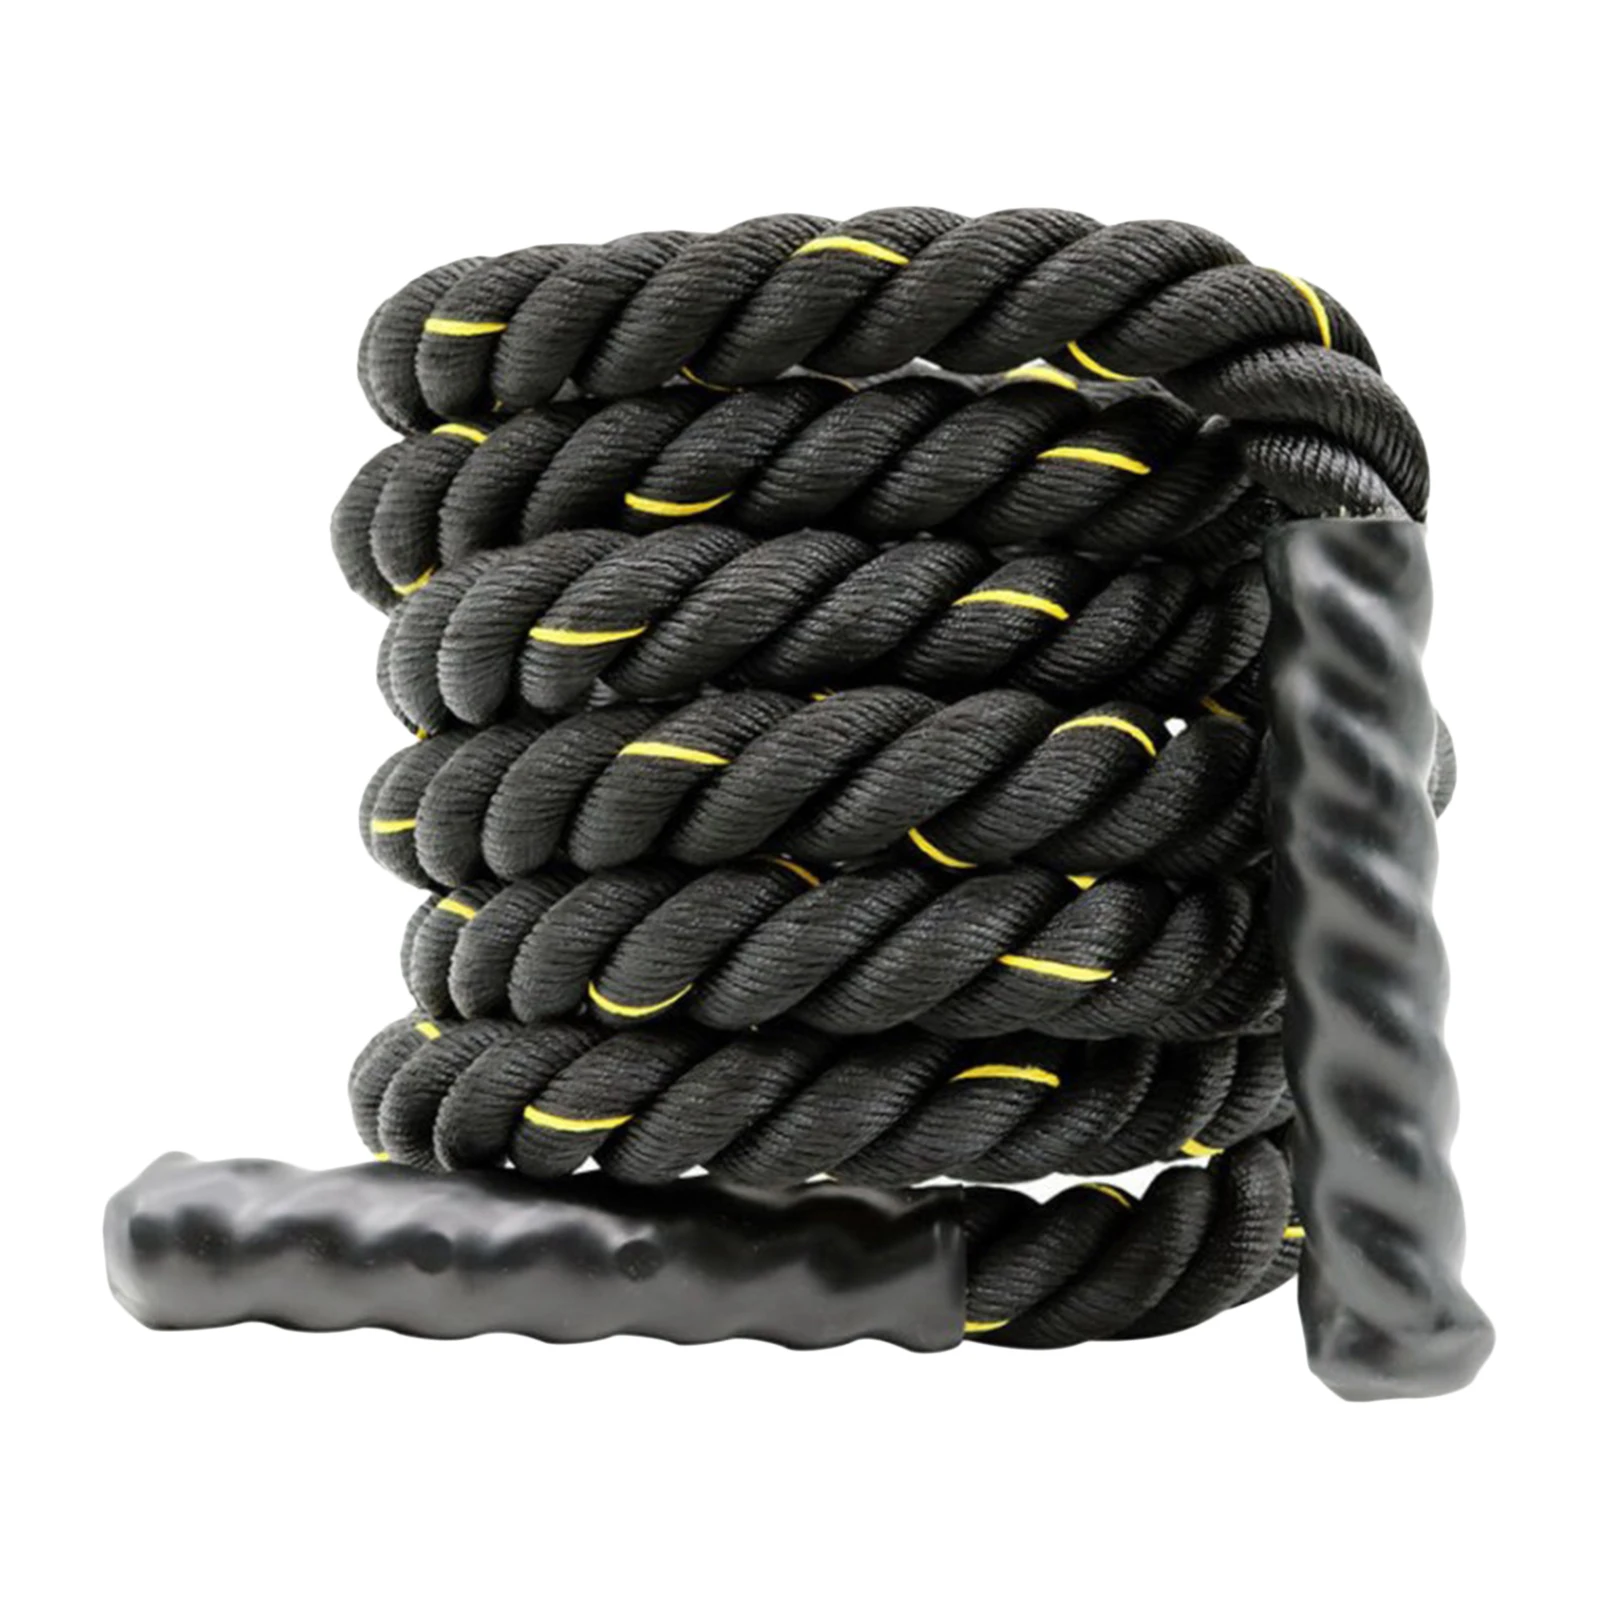 

Battle Power Rope Battling Sport Gym Exercise Fitness Strength Training 38/50mm